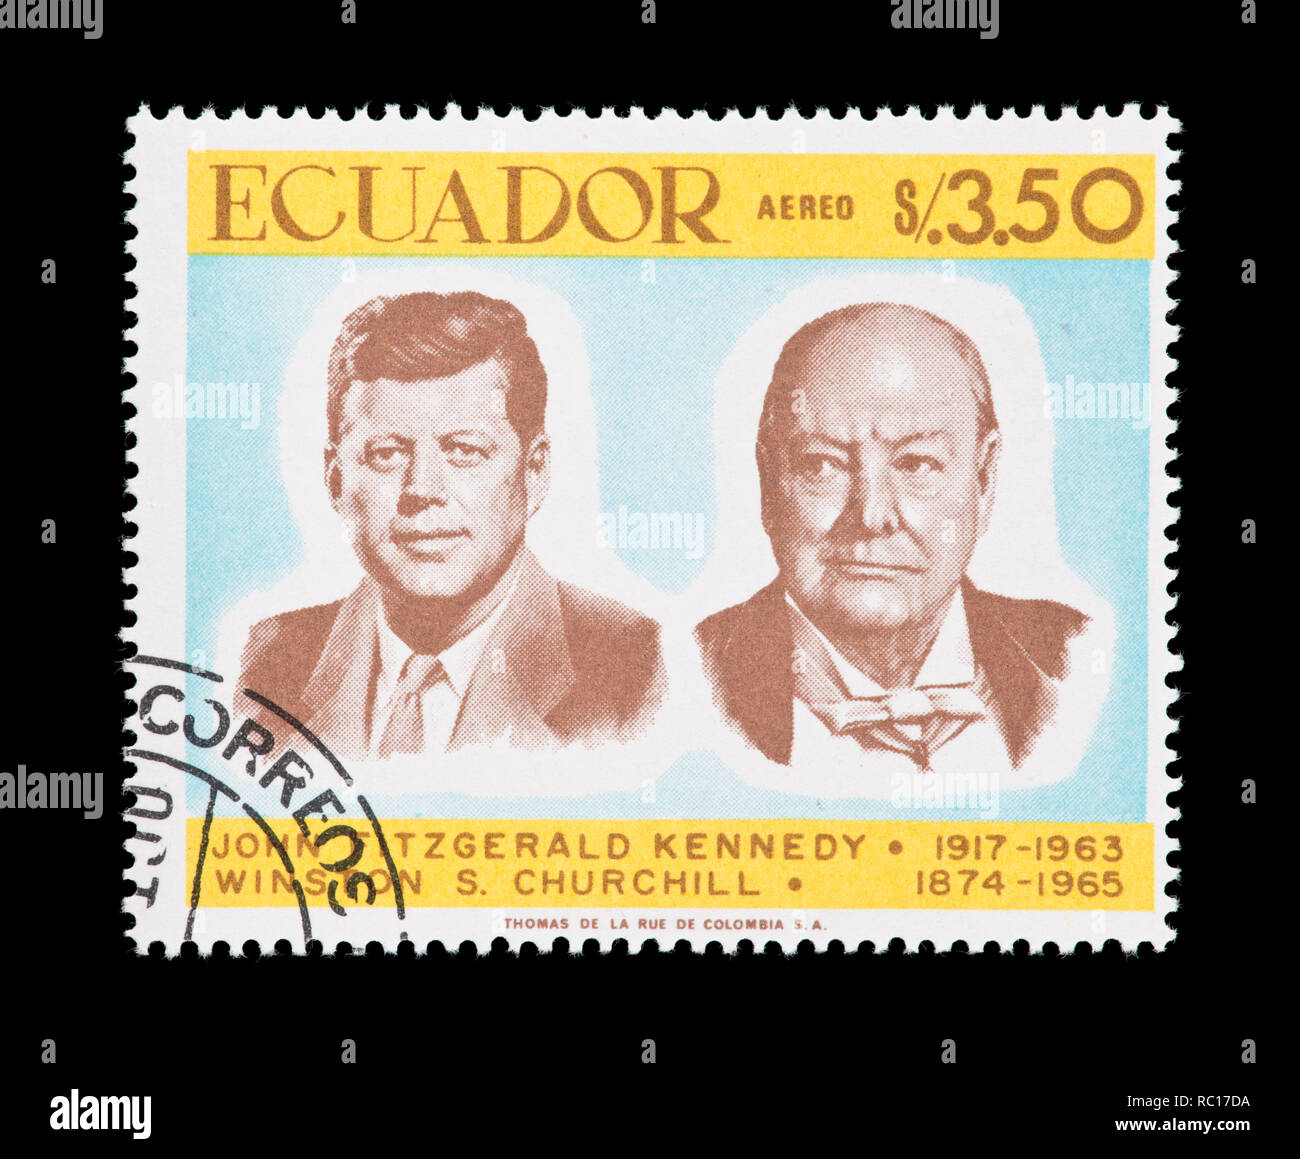 Francobollo da Ecuador raffigurante John Fitzgerald Kennedy, 50-esimo anniversario della sua nascita e Winston Churchill. Foto Stock